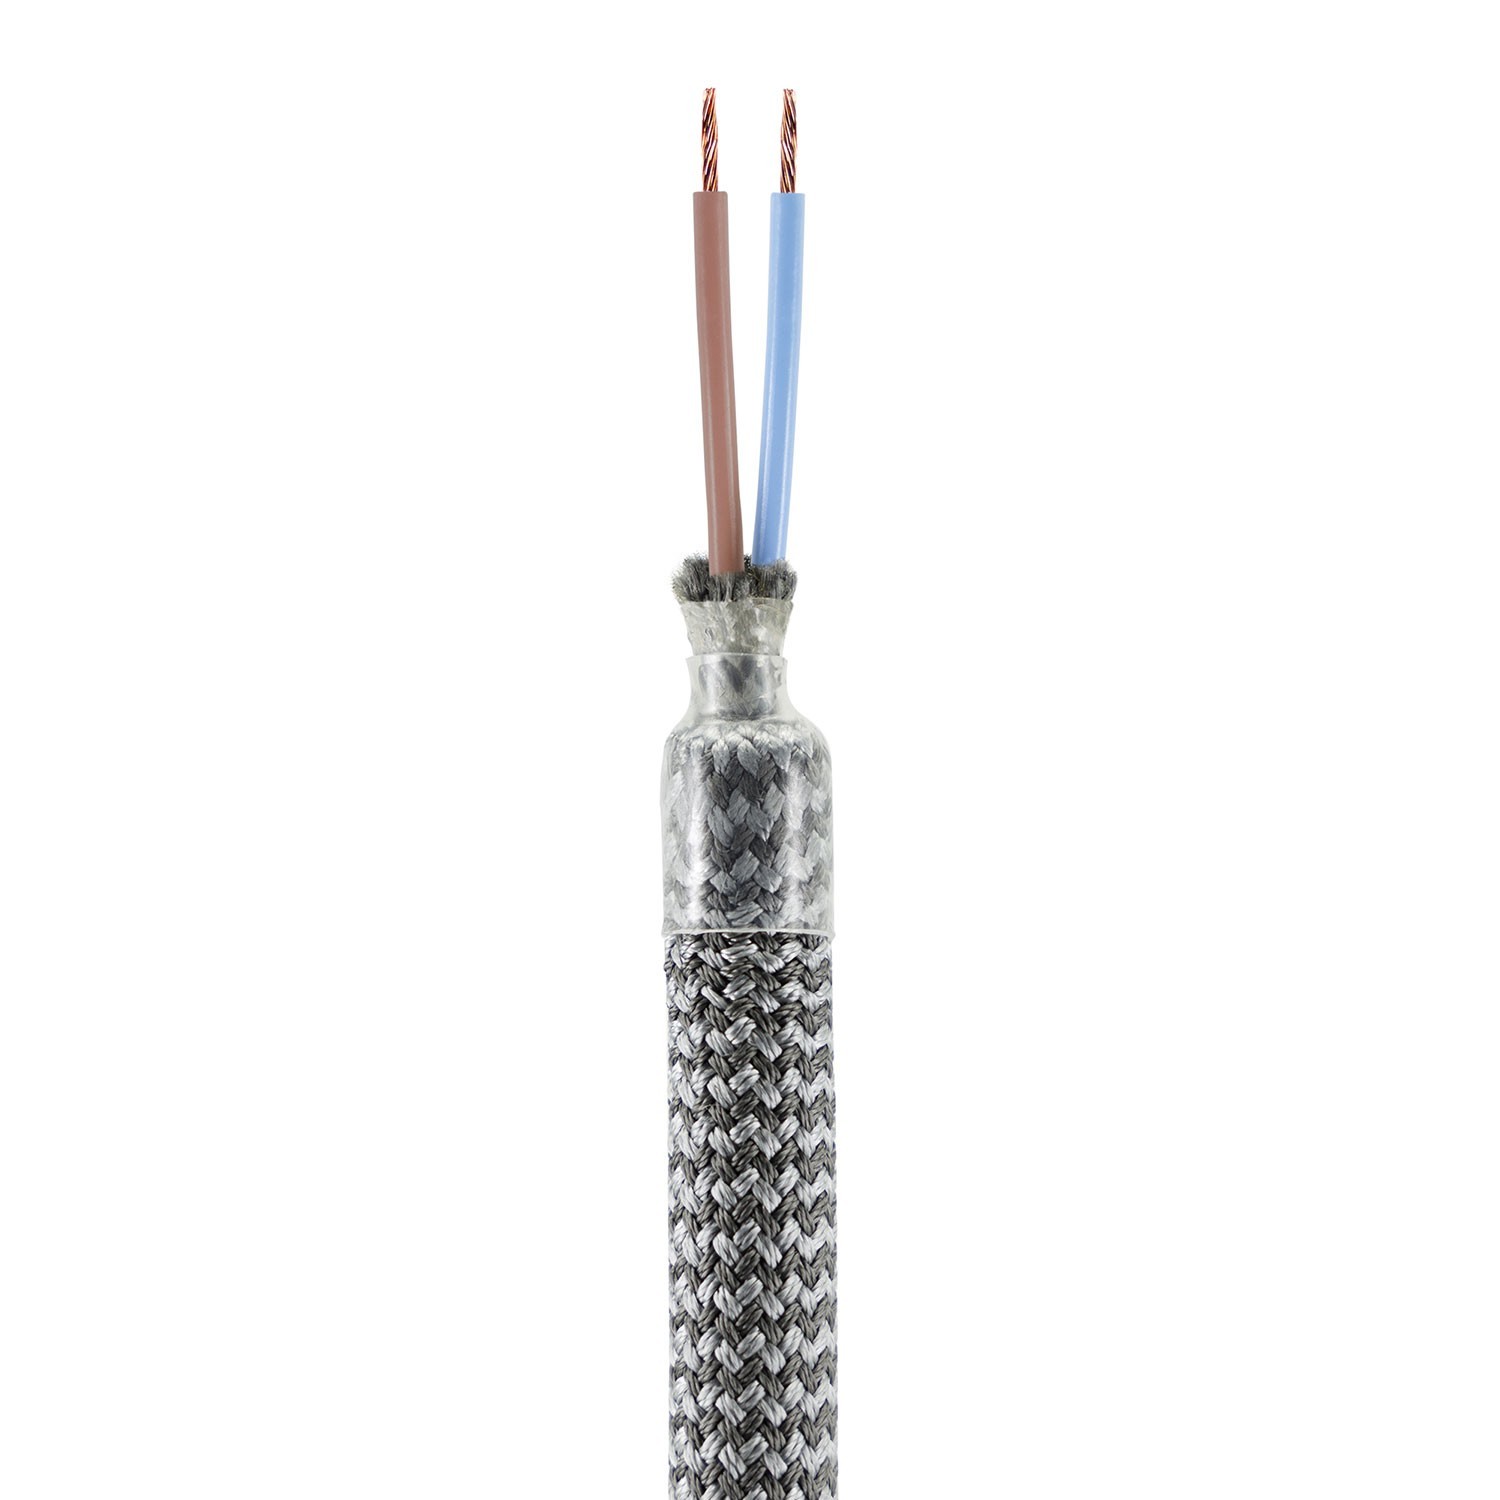 Kit Creative Flex flexibele buis bekleed met titanium RM75 stof met metalen eindstukken